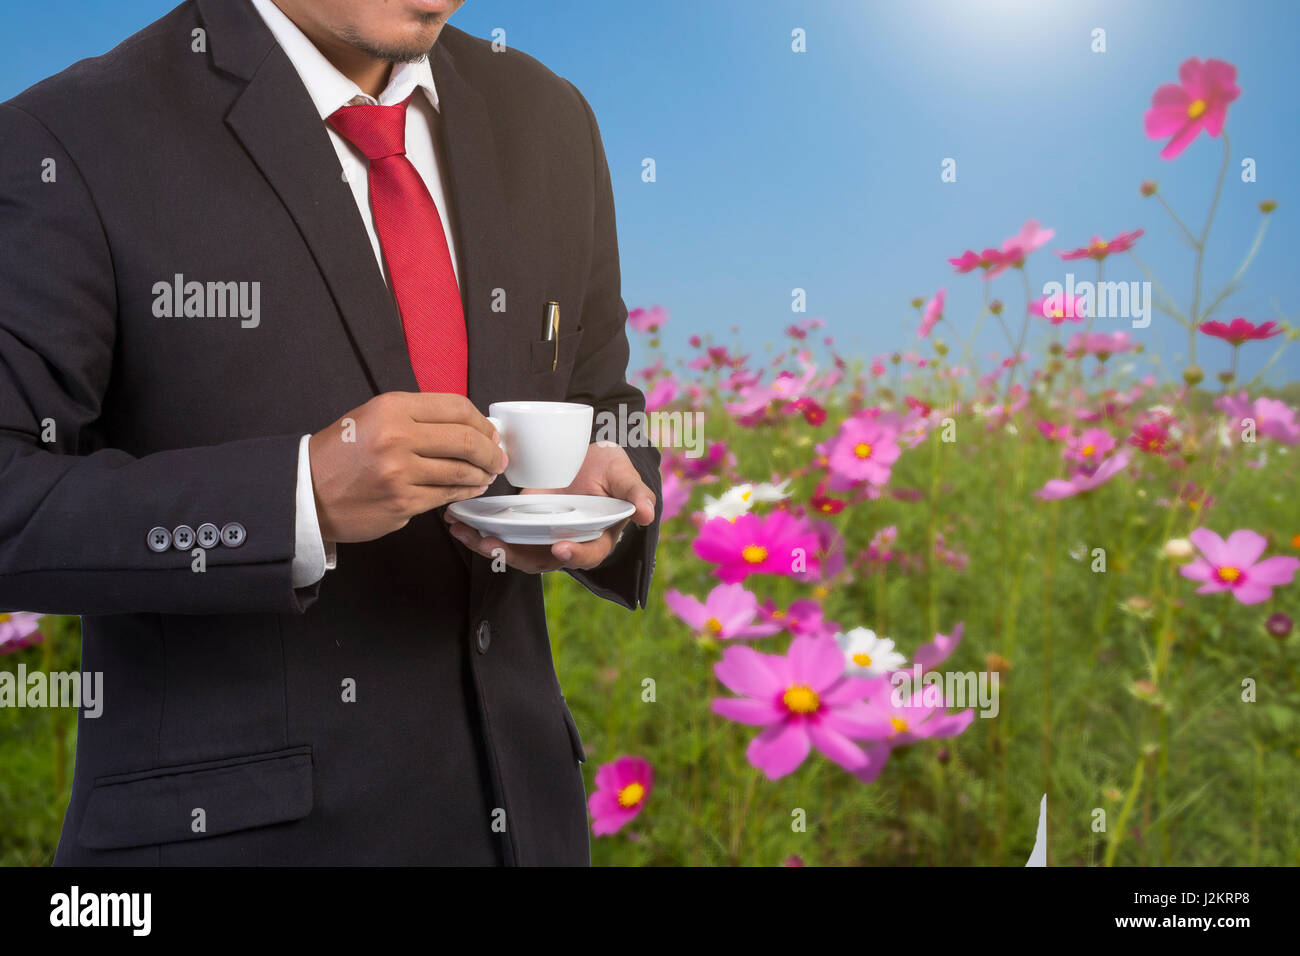 Homme de génie avec casque de sécurité blanc standing in front of flower gardent Banque D'Images